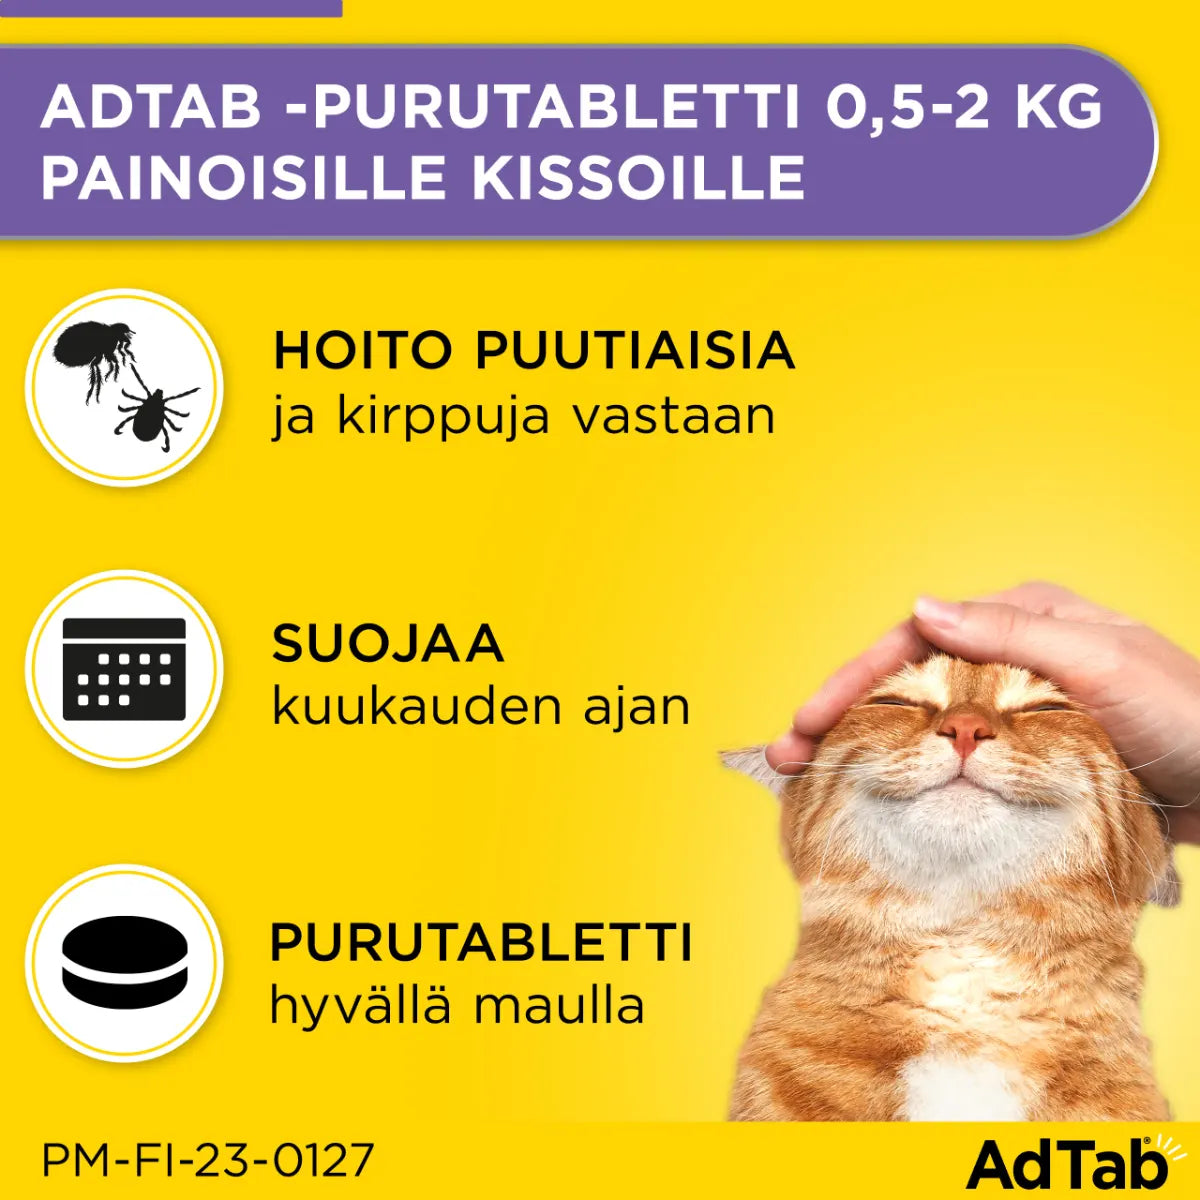 ADTAB 12 mg vet purutabletti kissoille 0,5-2 kg 3 kpl hoitaa ja suojaa